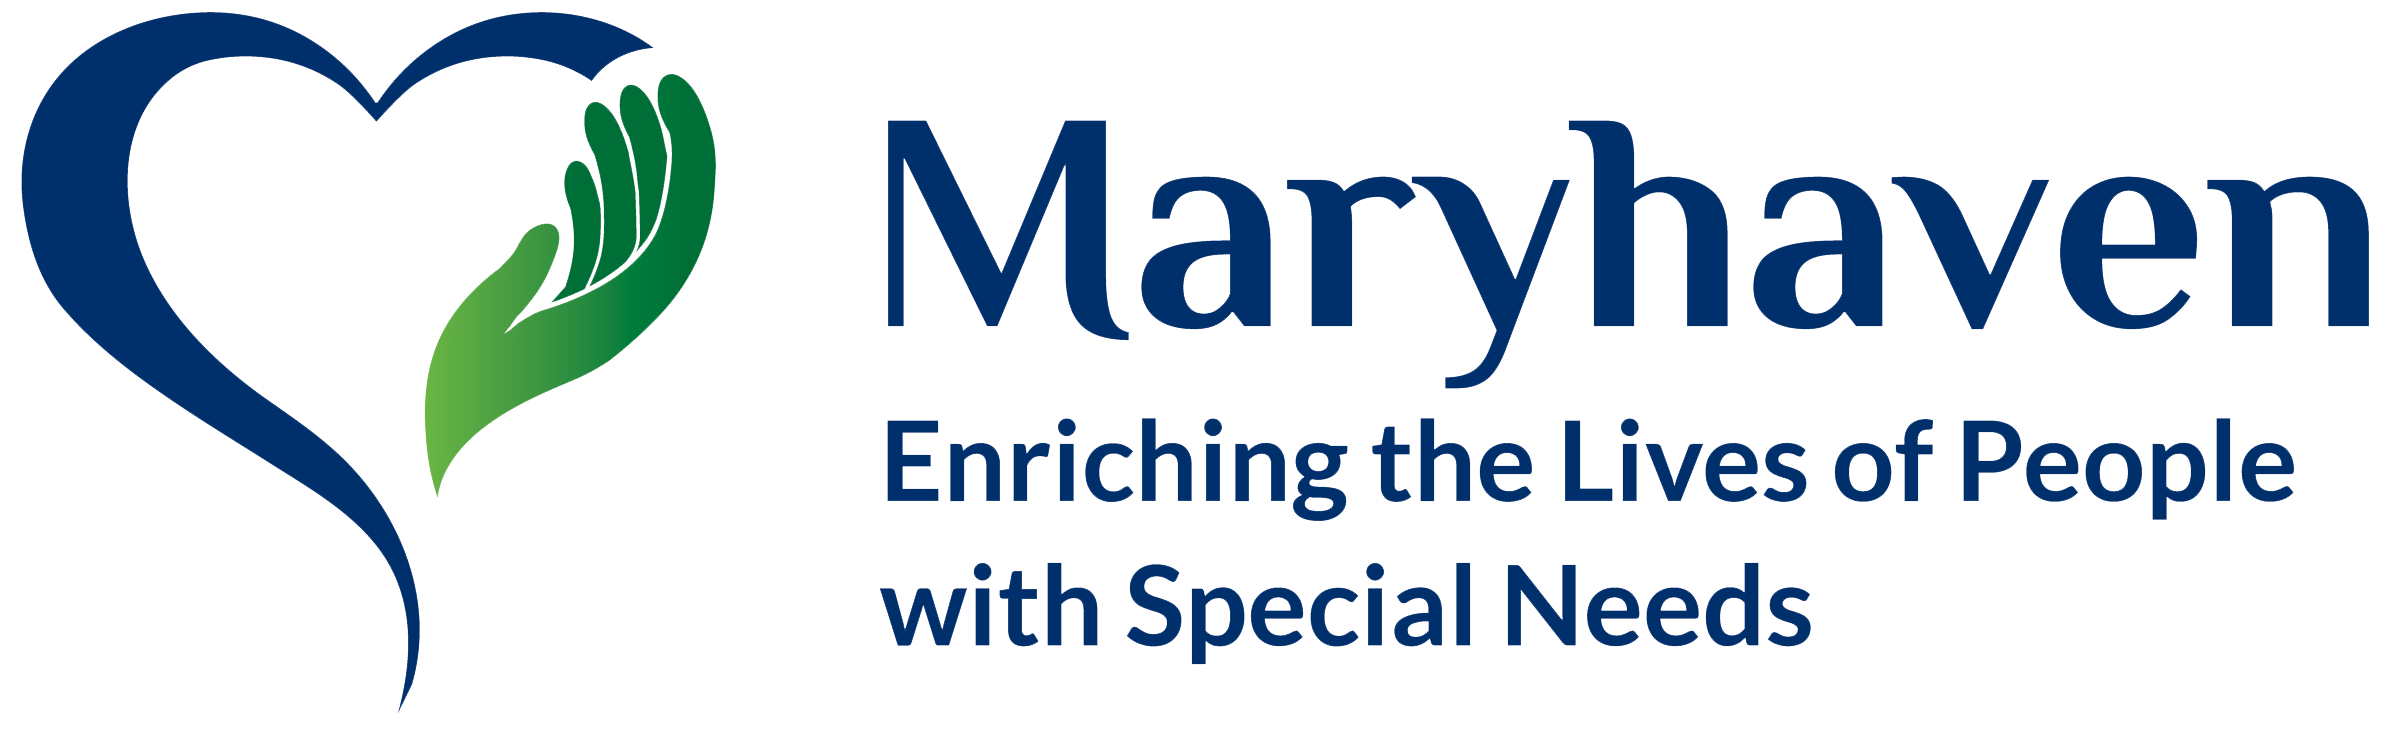 Maryhaven_Logo.png